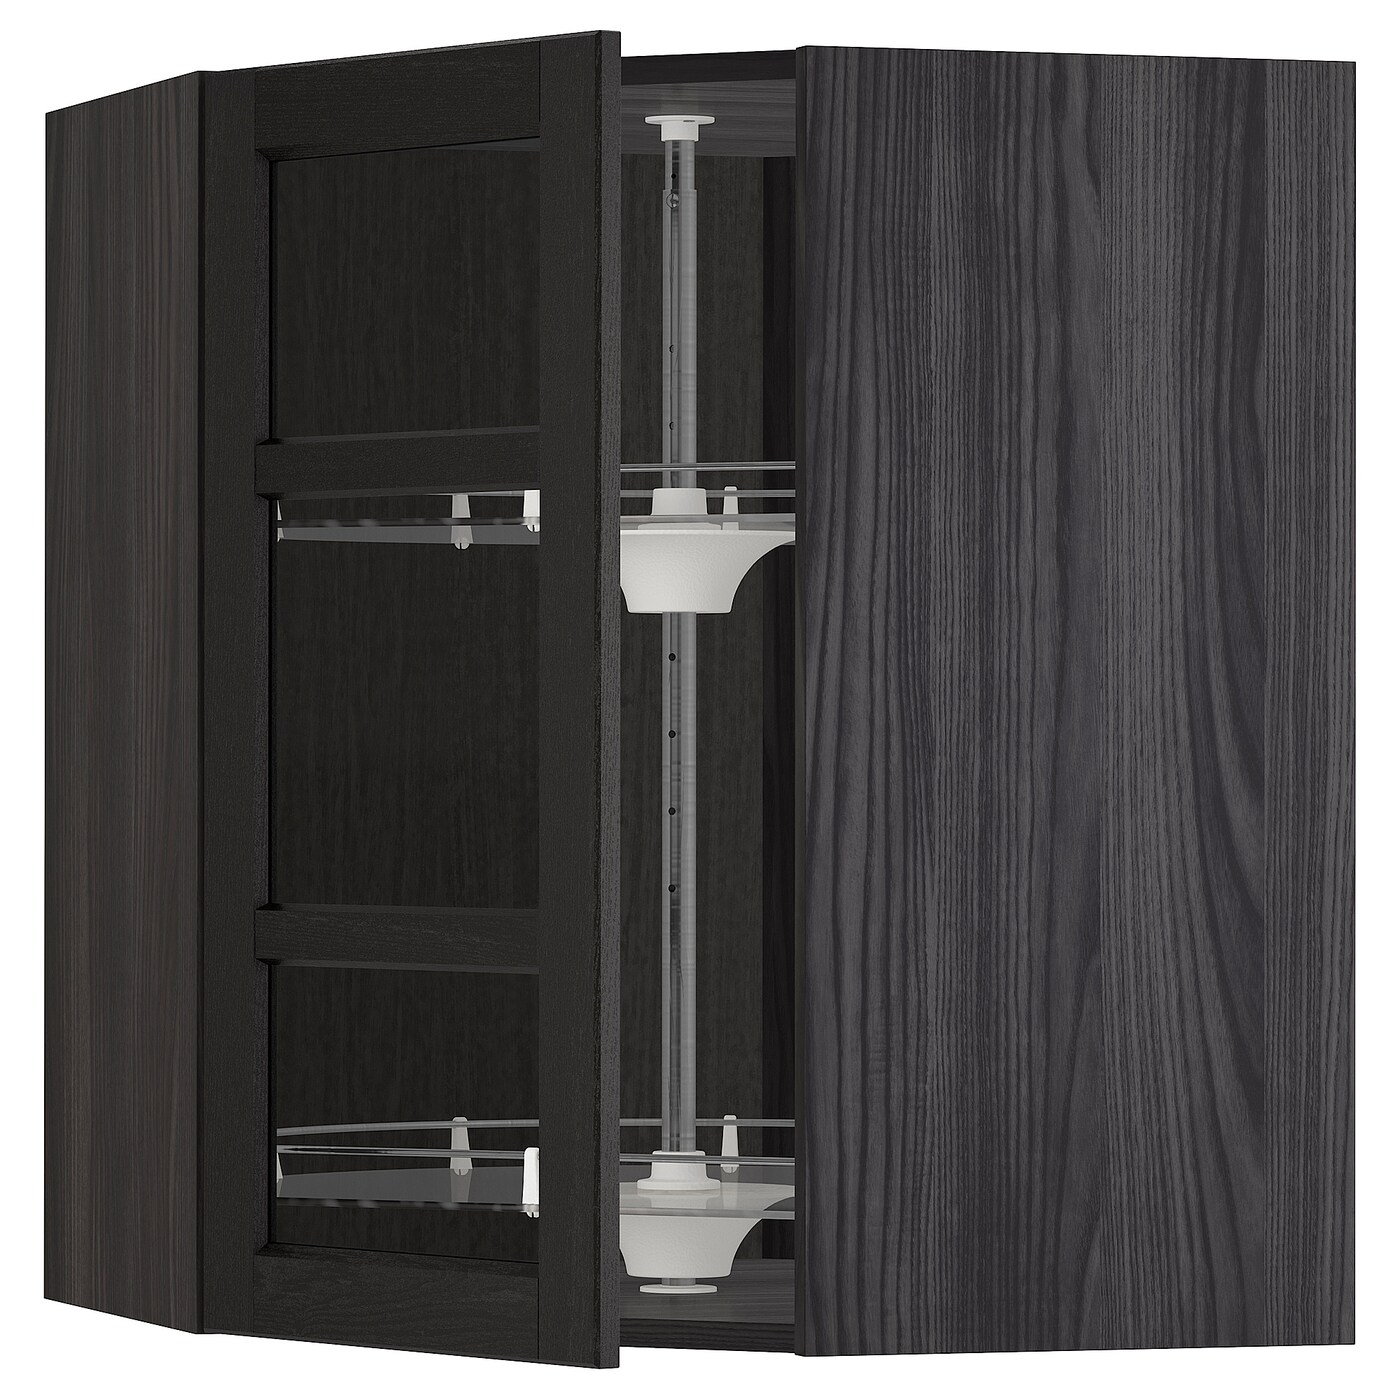 Навесной шкаф - IKEA METOD, 67.5х67.5х80 см, черный/стекло, МЕТОД ИКЕА